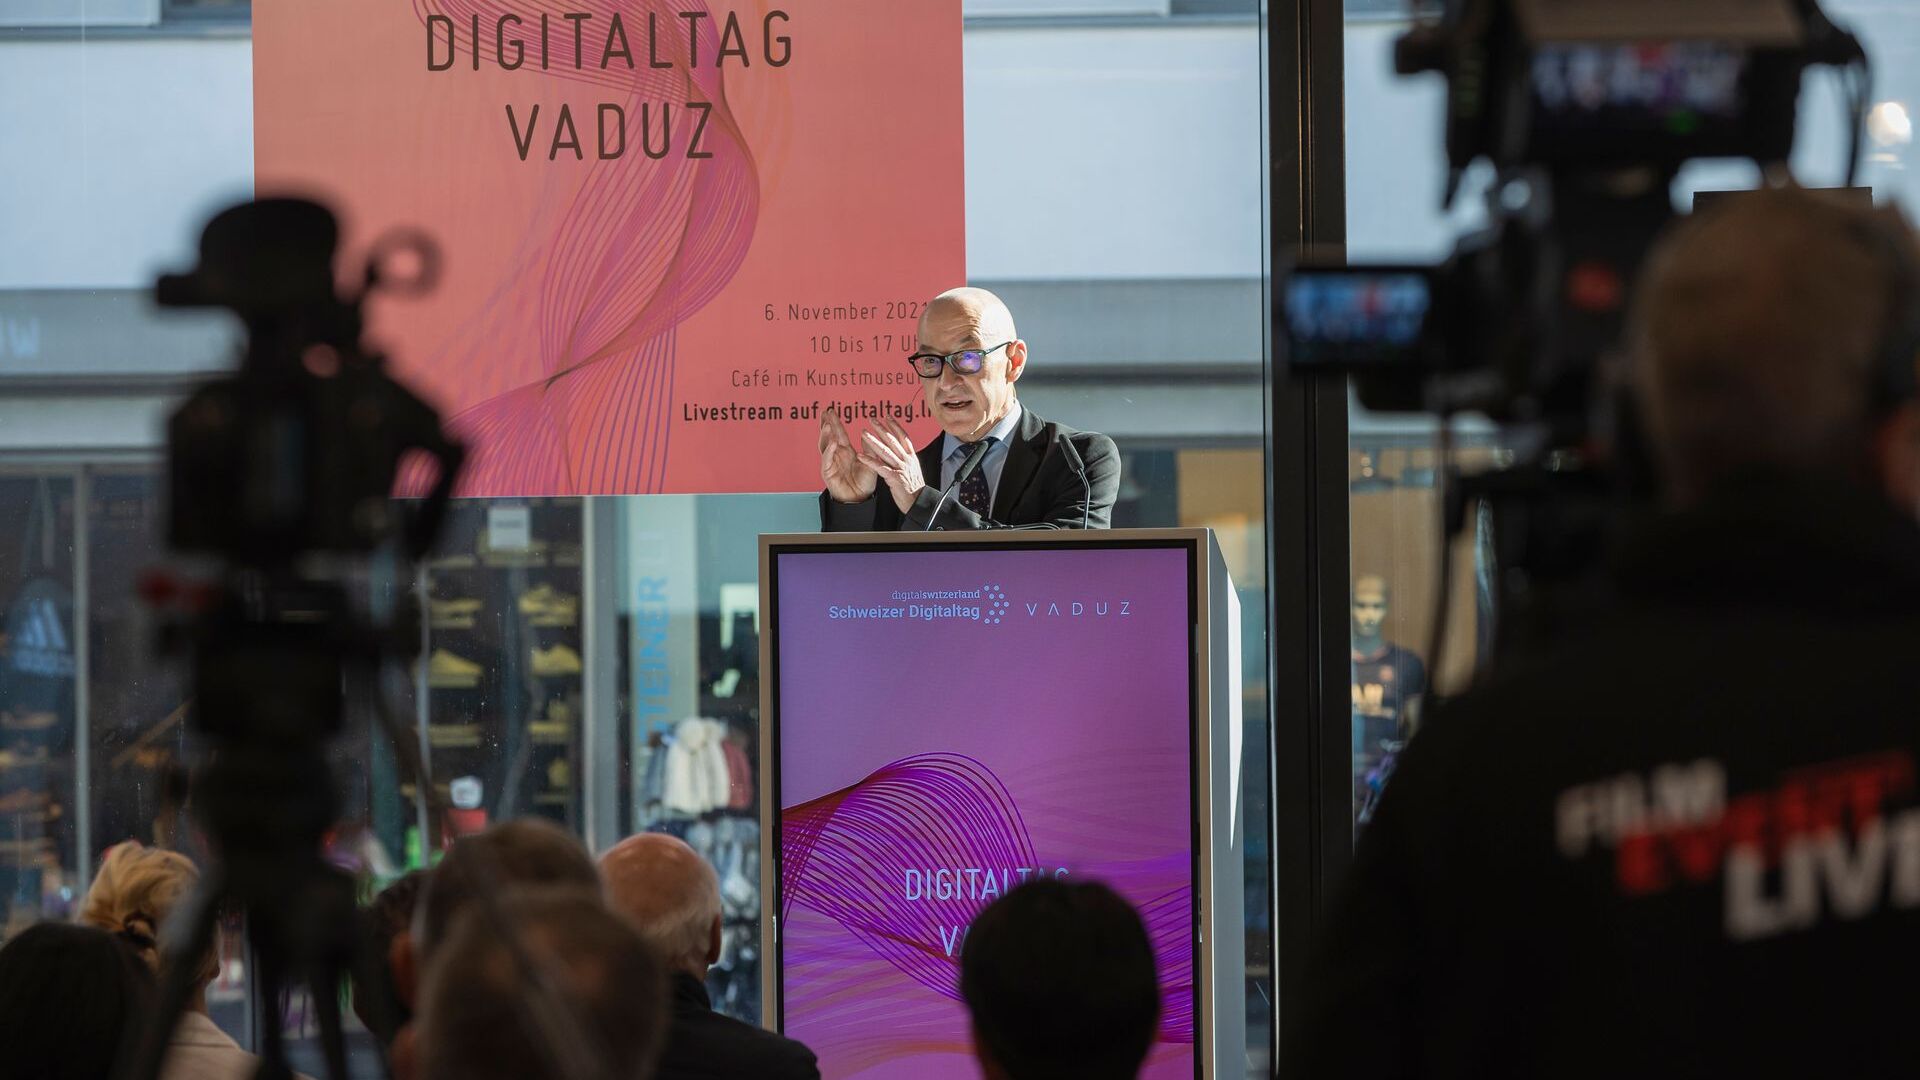 La “Digitaltag Vaduz”, accolta dal Kunstmuseum della capitale del Principato del Liechtenstein sabato 6 novembre 2021, ha suscitato l’entusiasmo di pubblico e relatori in analogia con la “Giornata Digitale Svizzera” del successivo giorno 10: l'intervento del futurologo ed esperto di tendenze tedesco David Bosshart